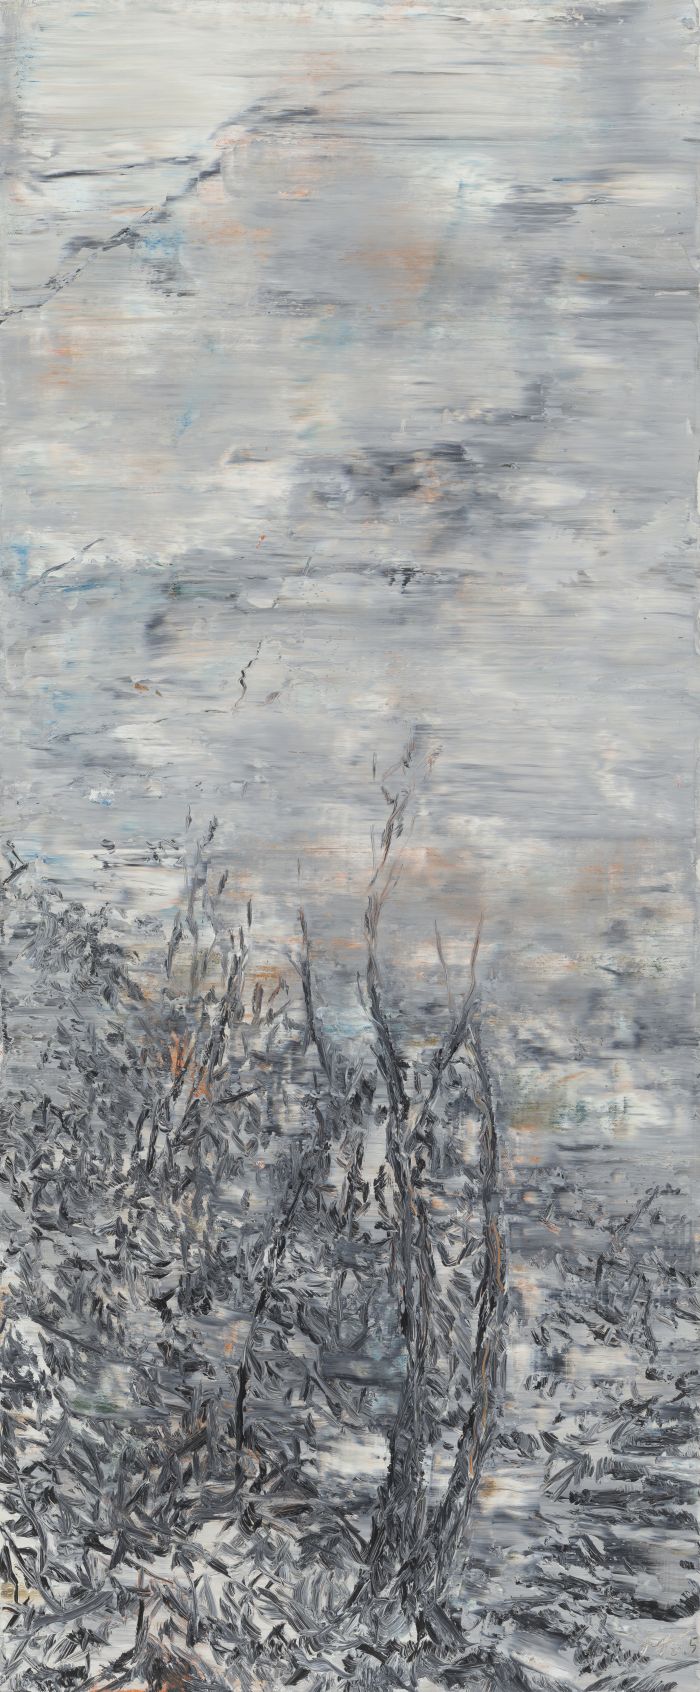 5，余旭鸿，《钩古古田山水图》之一，布面油画，120  x50 cm,2015 